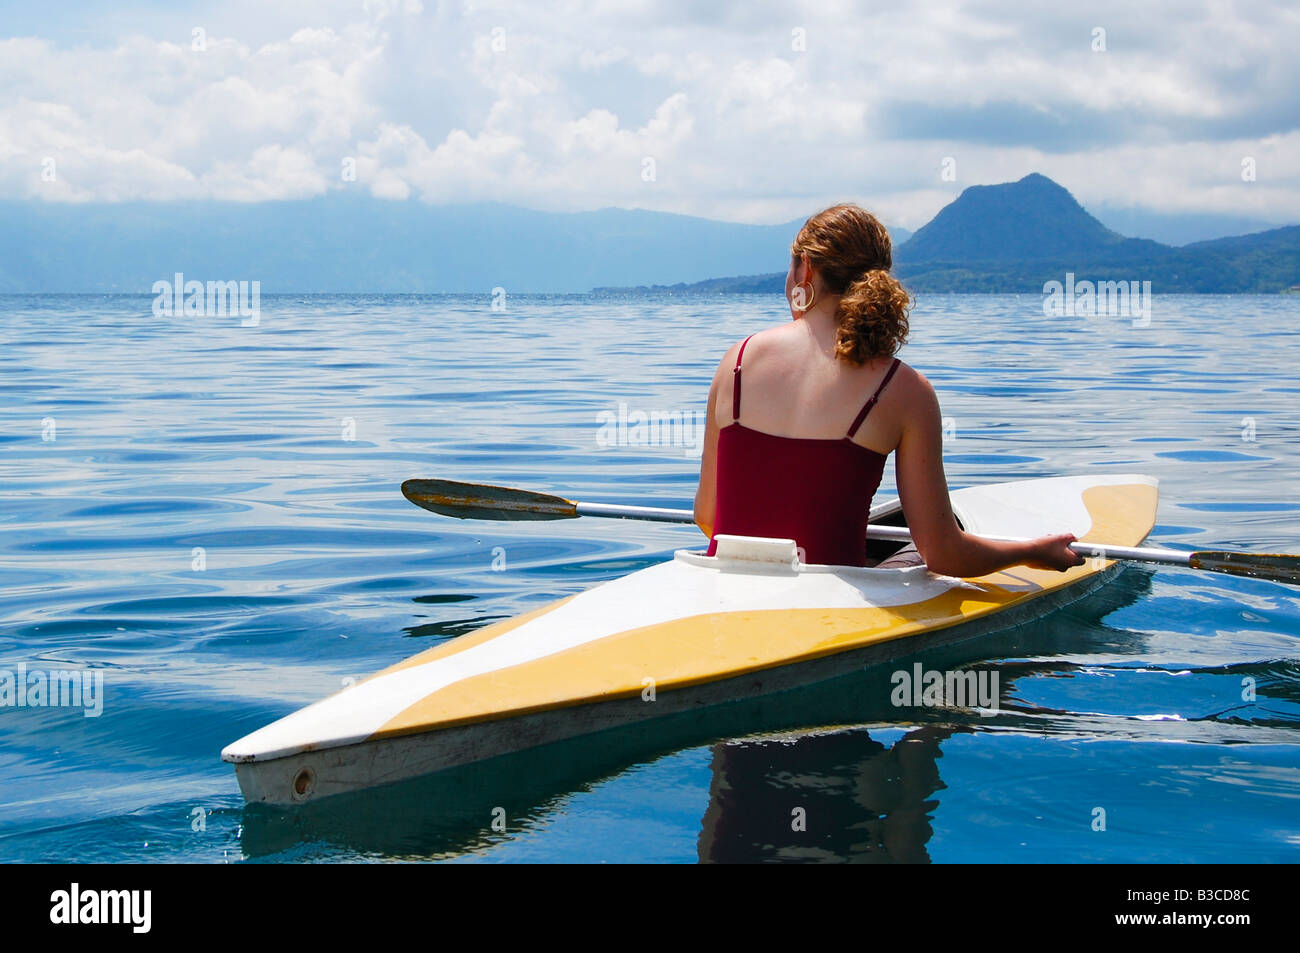 Woman in kayak on Lake Atitlan Stock Photo